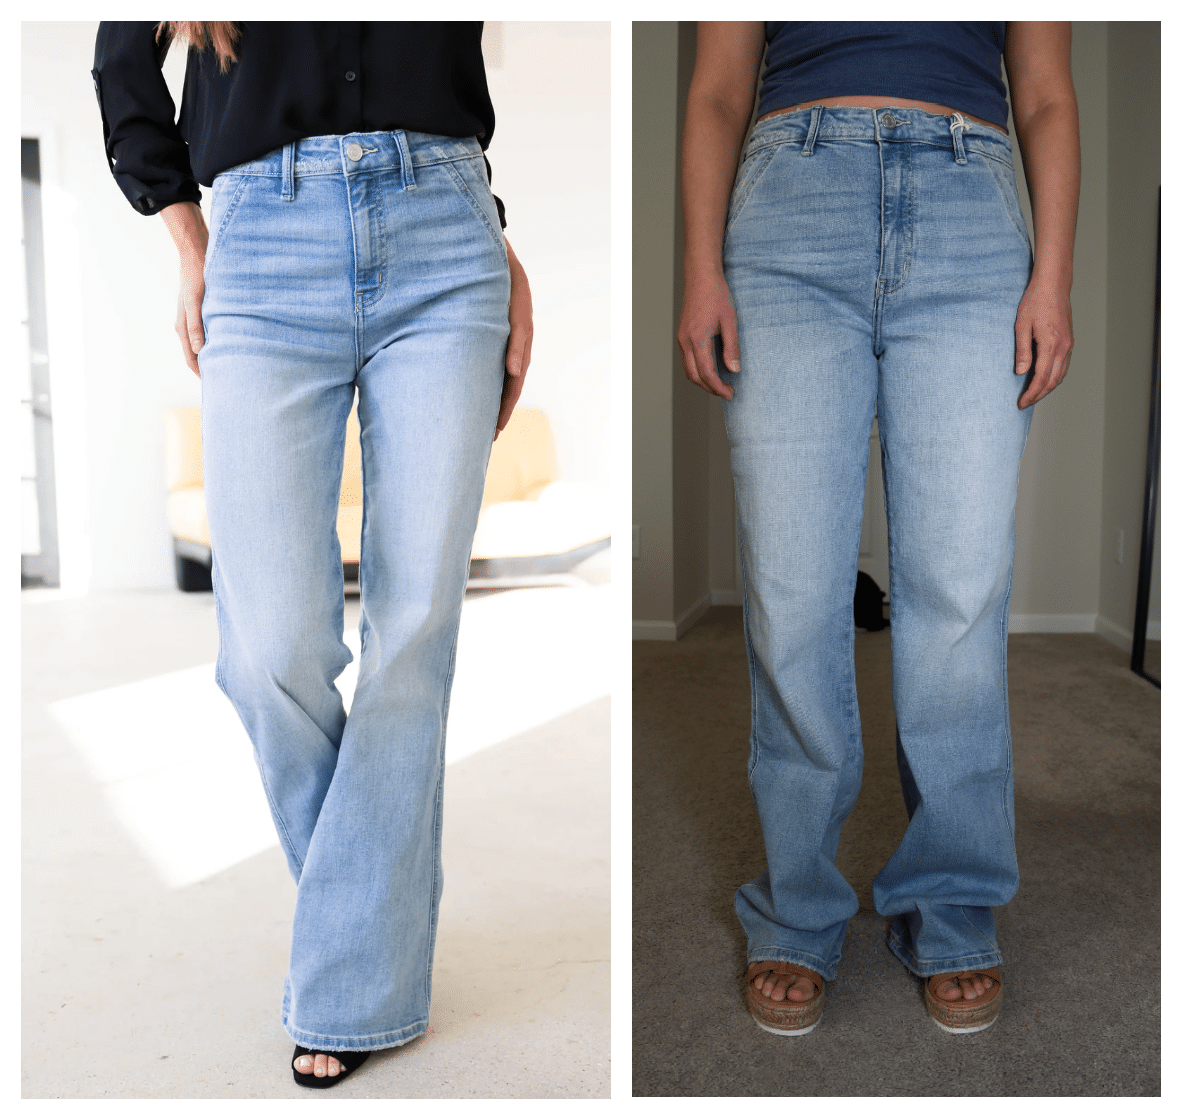 lime lush kancan flare jeans comparison